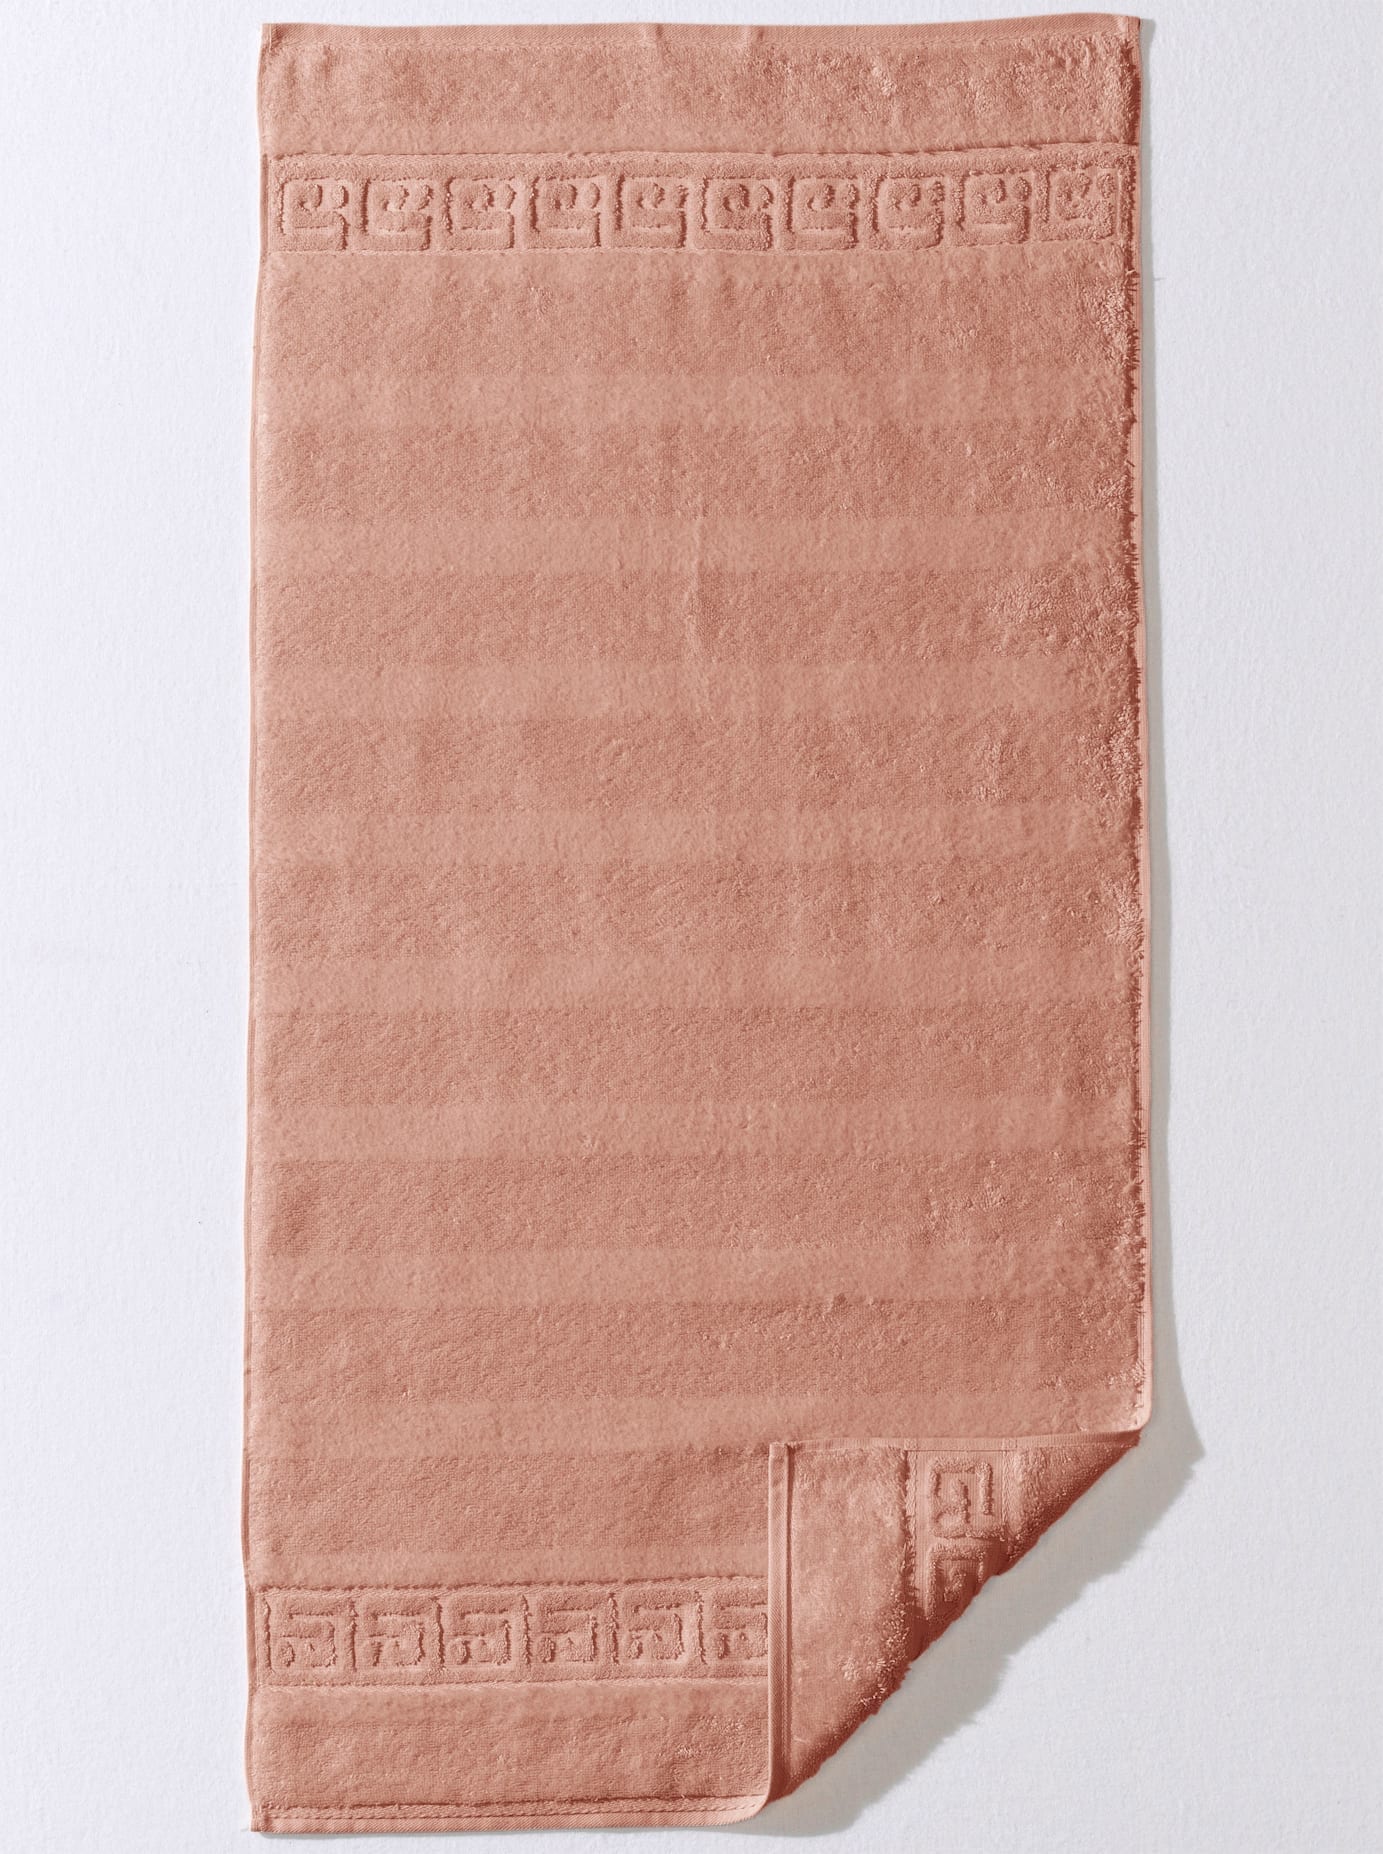 Cawö Handtuch, (1 St.) bequem kaufen